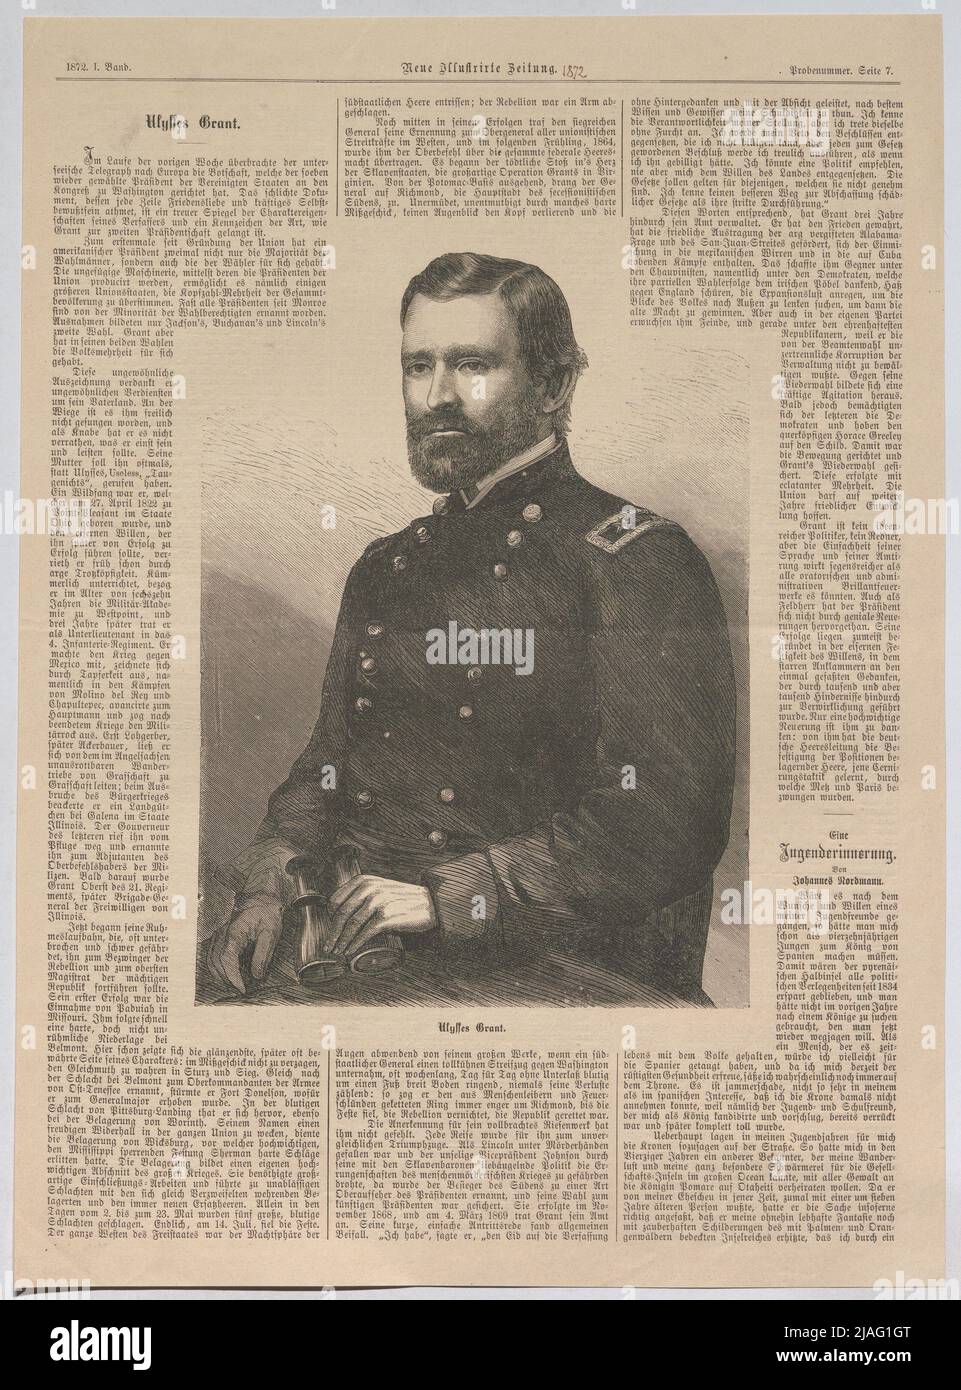 Ulysses Grant '. Ulysses S. Grant (du « nouveau journal illustré »). Inconnu Banque D'Images